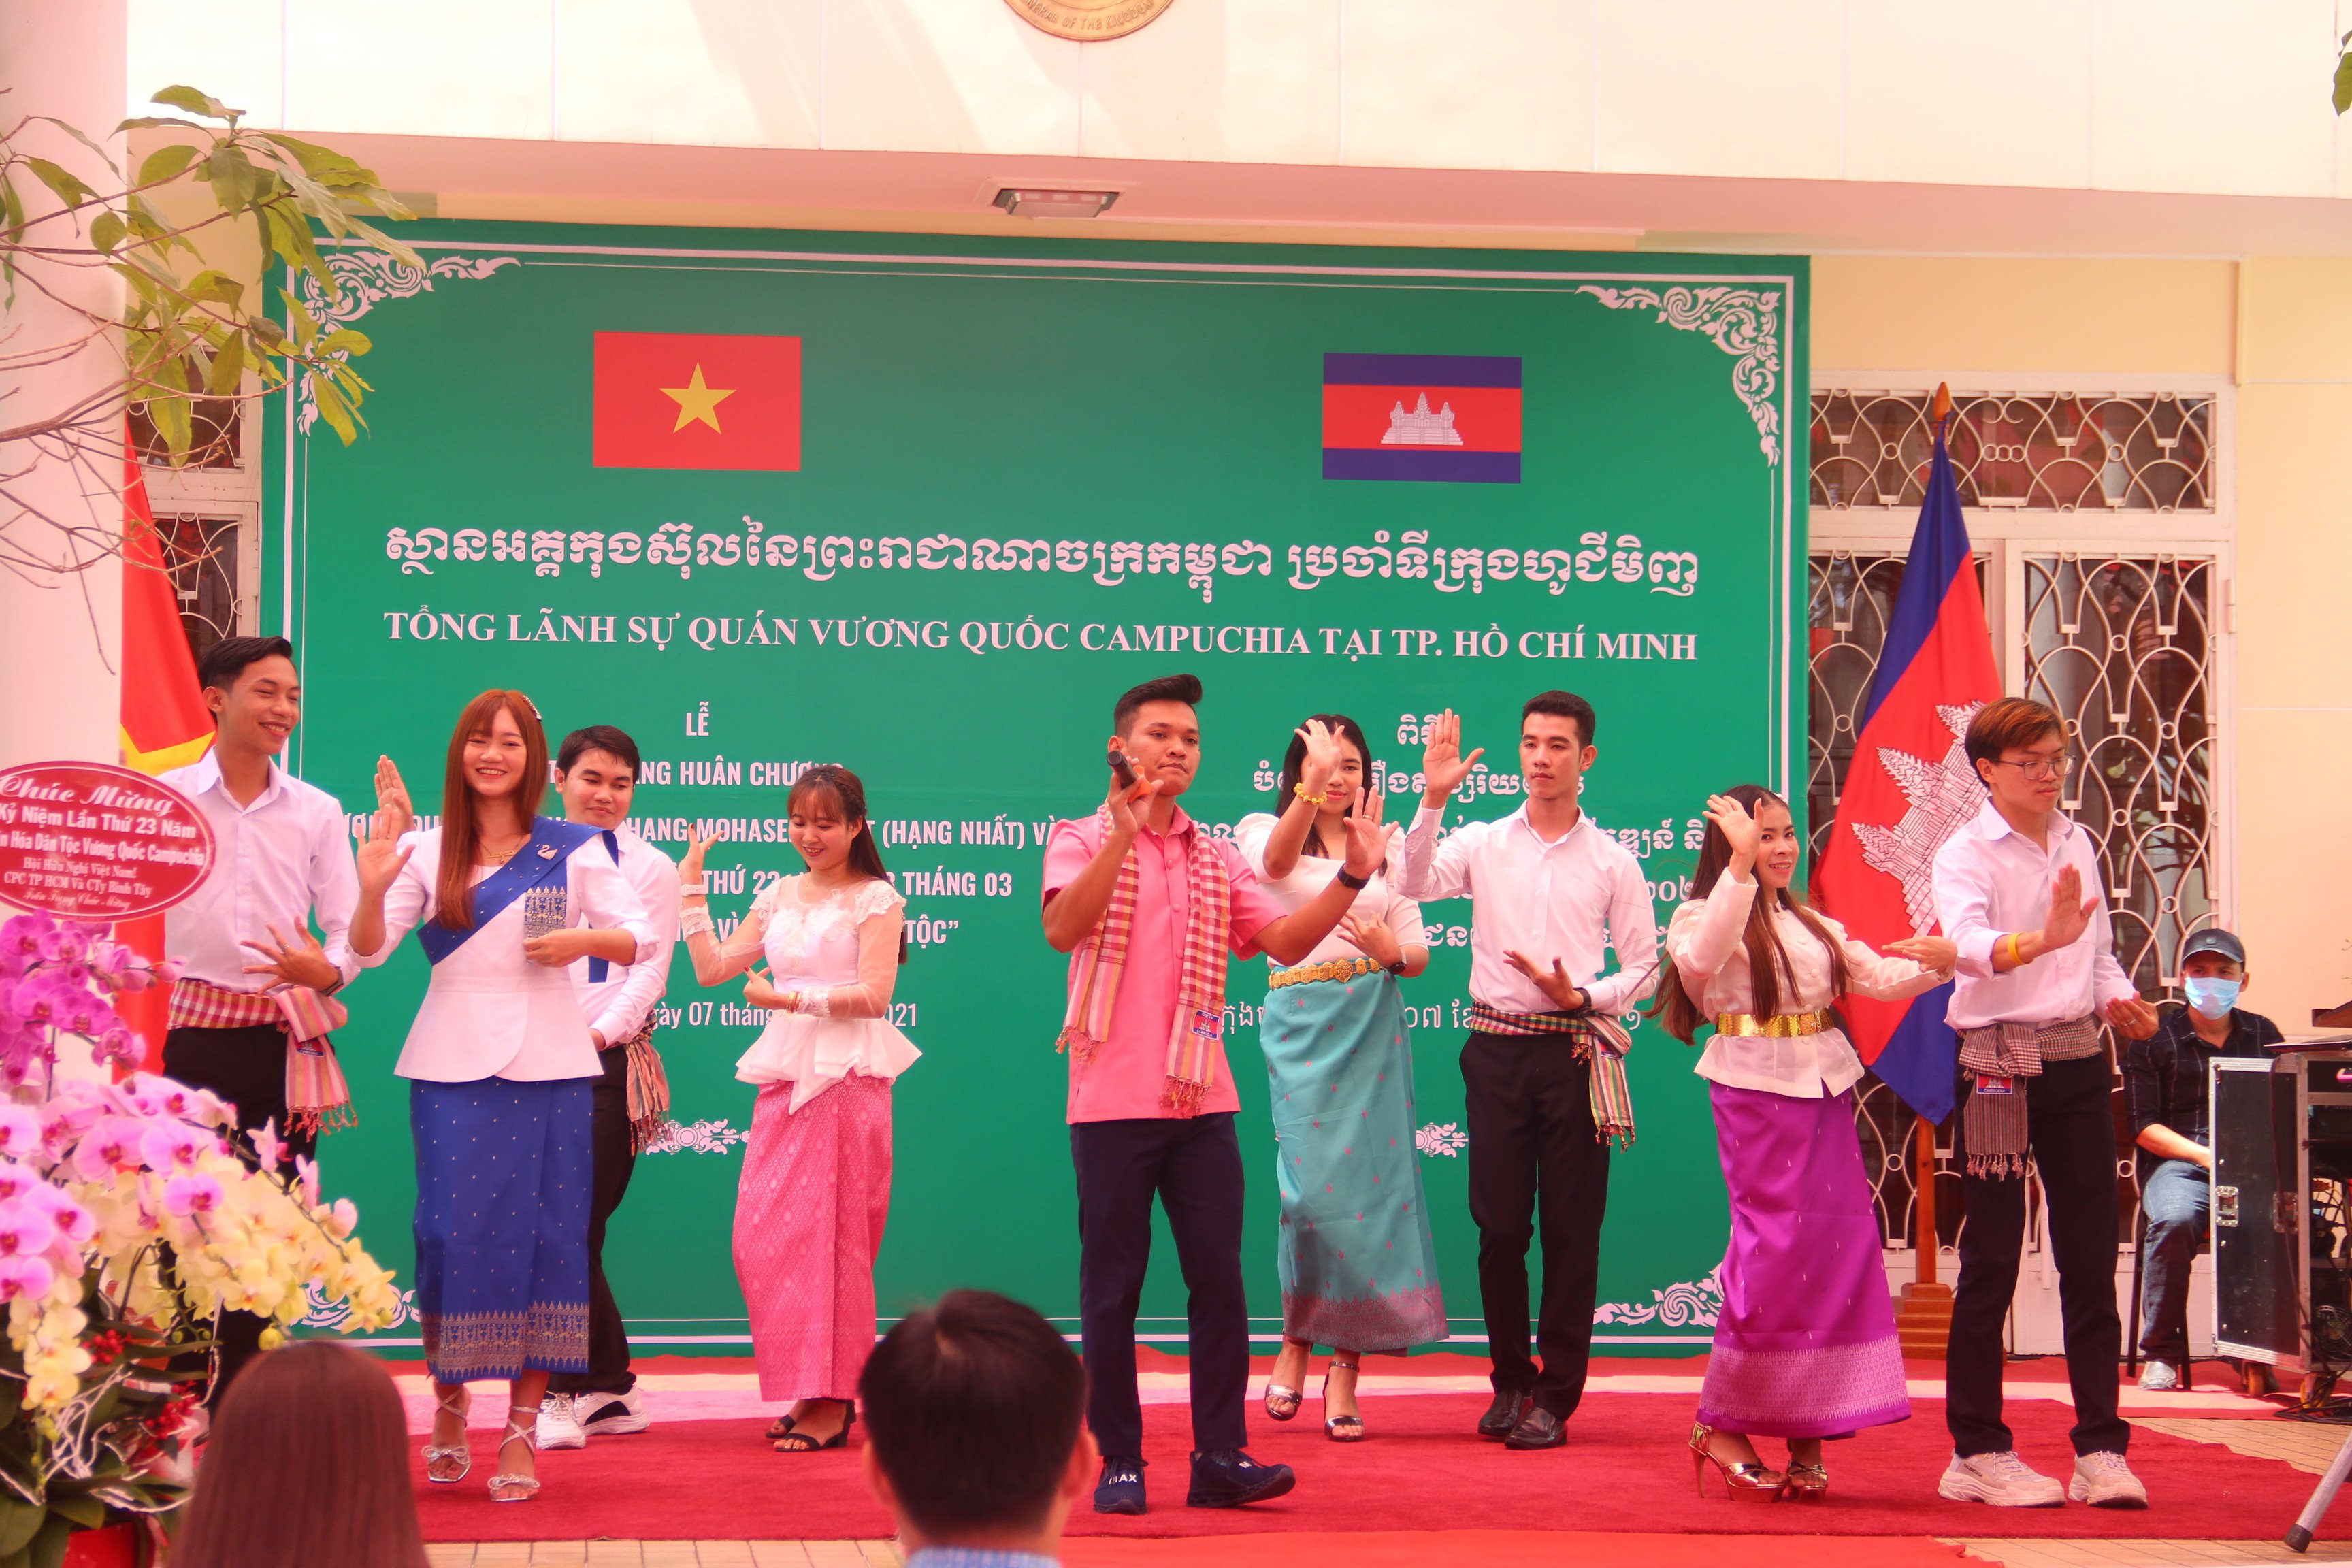 Văn hóa dân tộc Khmer: Hãy khám phá văn hóa độc đáo của dân tộc Khmer với những nét sắc tốt đẹp và truyền thống lâu đời. Tại đây, bạn sẽ được trải nghiệm những lễ hội rực rỡ, âm nhạc và múa cổ truyền, cùng với những món ăn đặc sản ngon tuyệt. 2024 đang đến với sự phát triển và thịnh vượng cho tất cả các cộng đồng dân tộc Việt Nam.